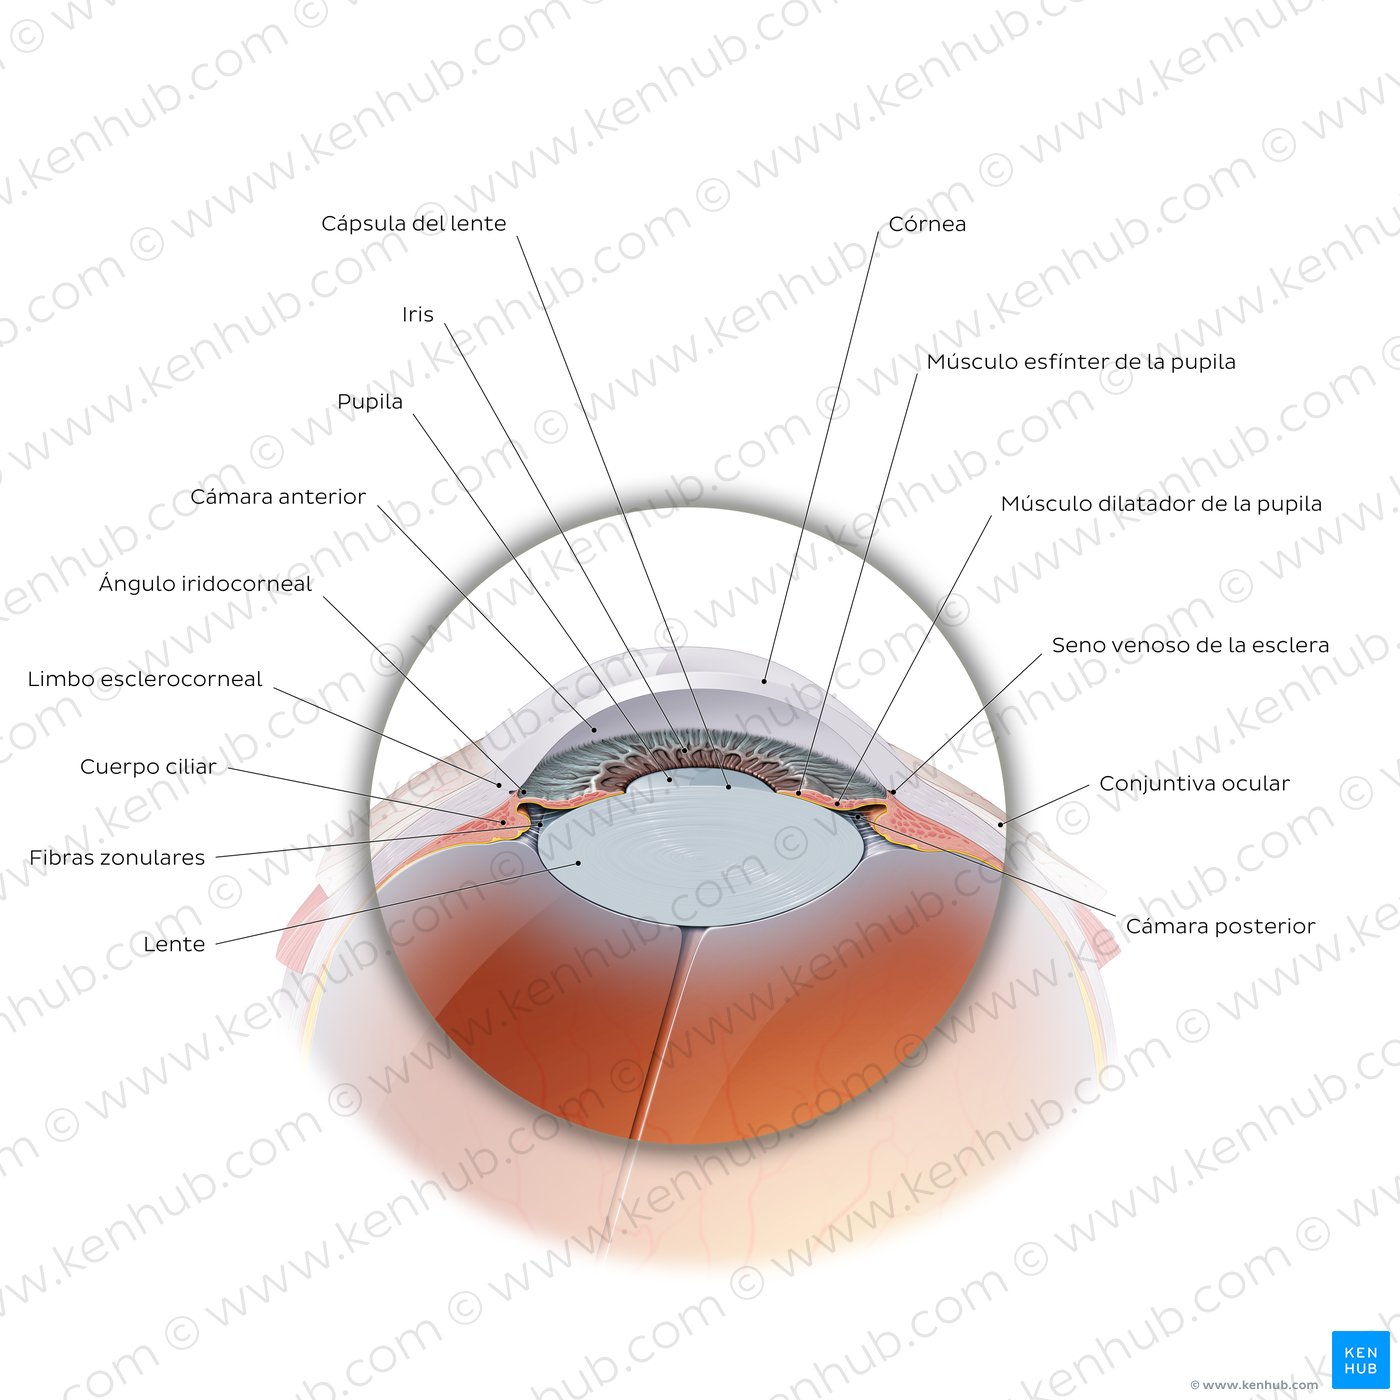 Porción anterior del globo ocular